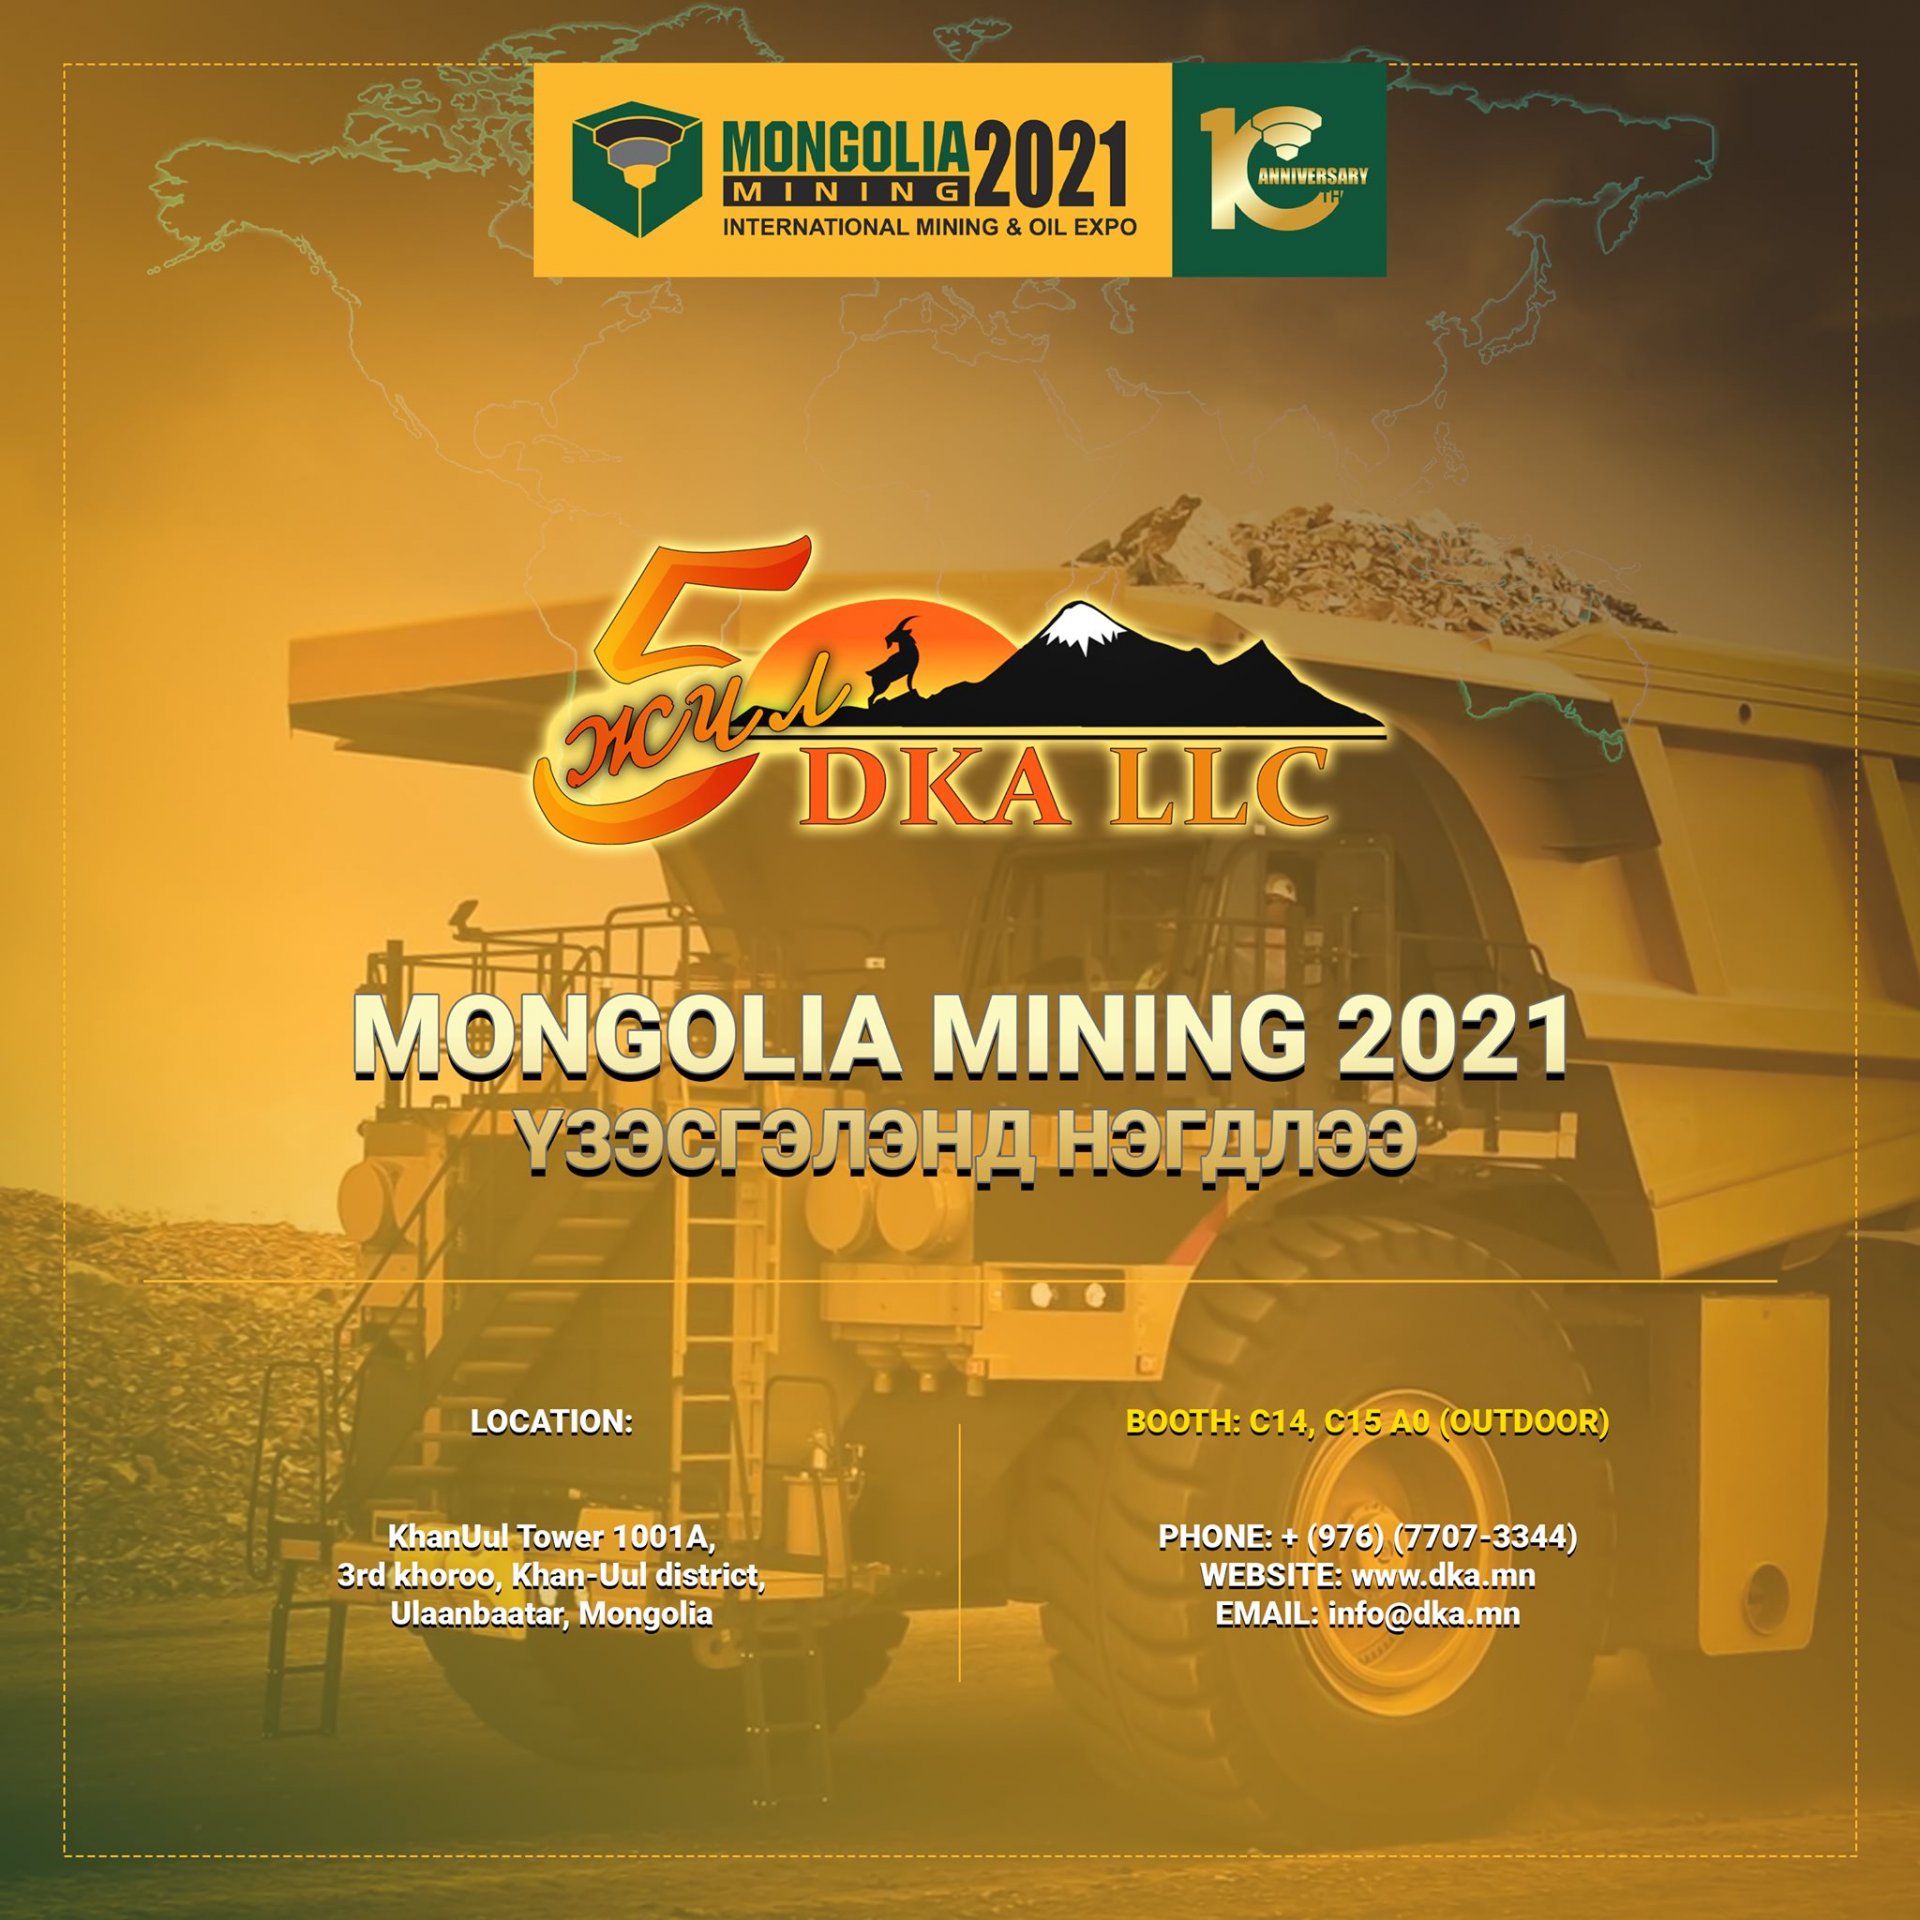 Mongolia Mining 2021 үзэсгэлэнд ДОМОГТ ХАН АЛТАЙ ХХК нэгдлээ. 